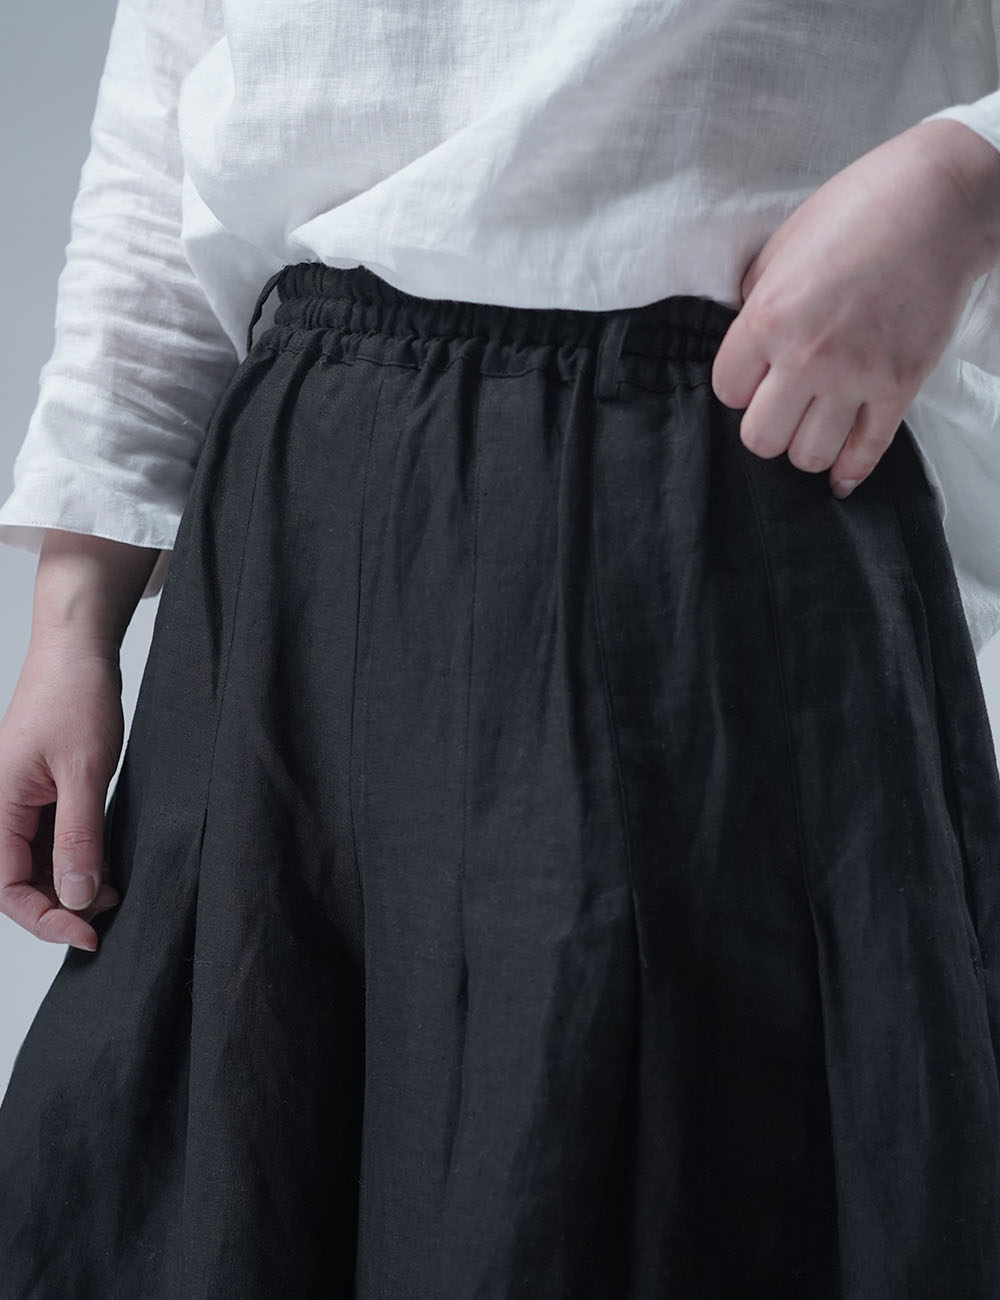 【wafu】Linen Pants 袴(はかま)パンツ/黒 b002k-bck1